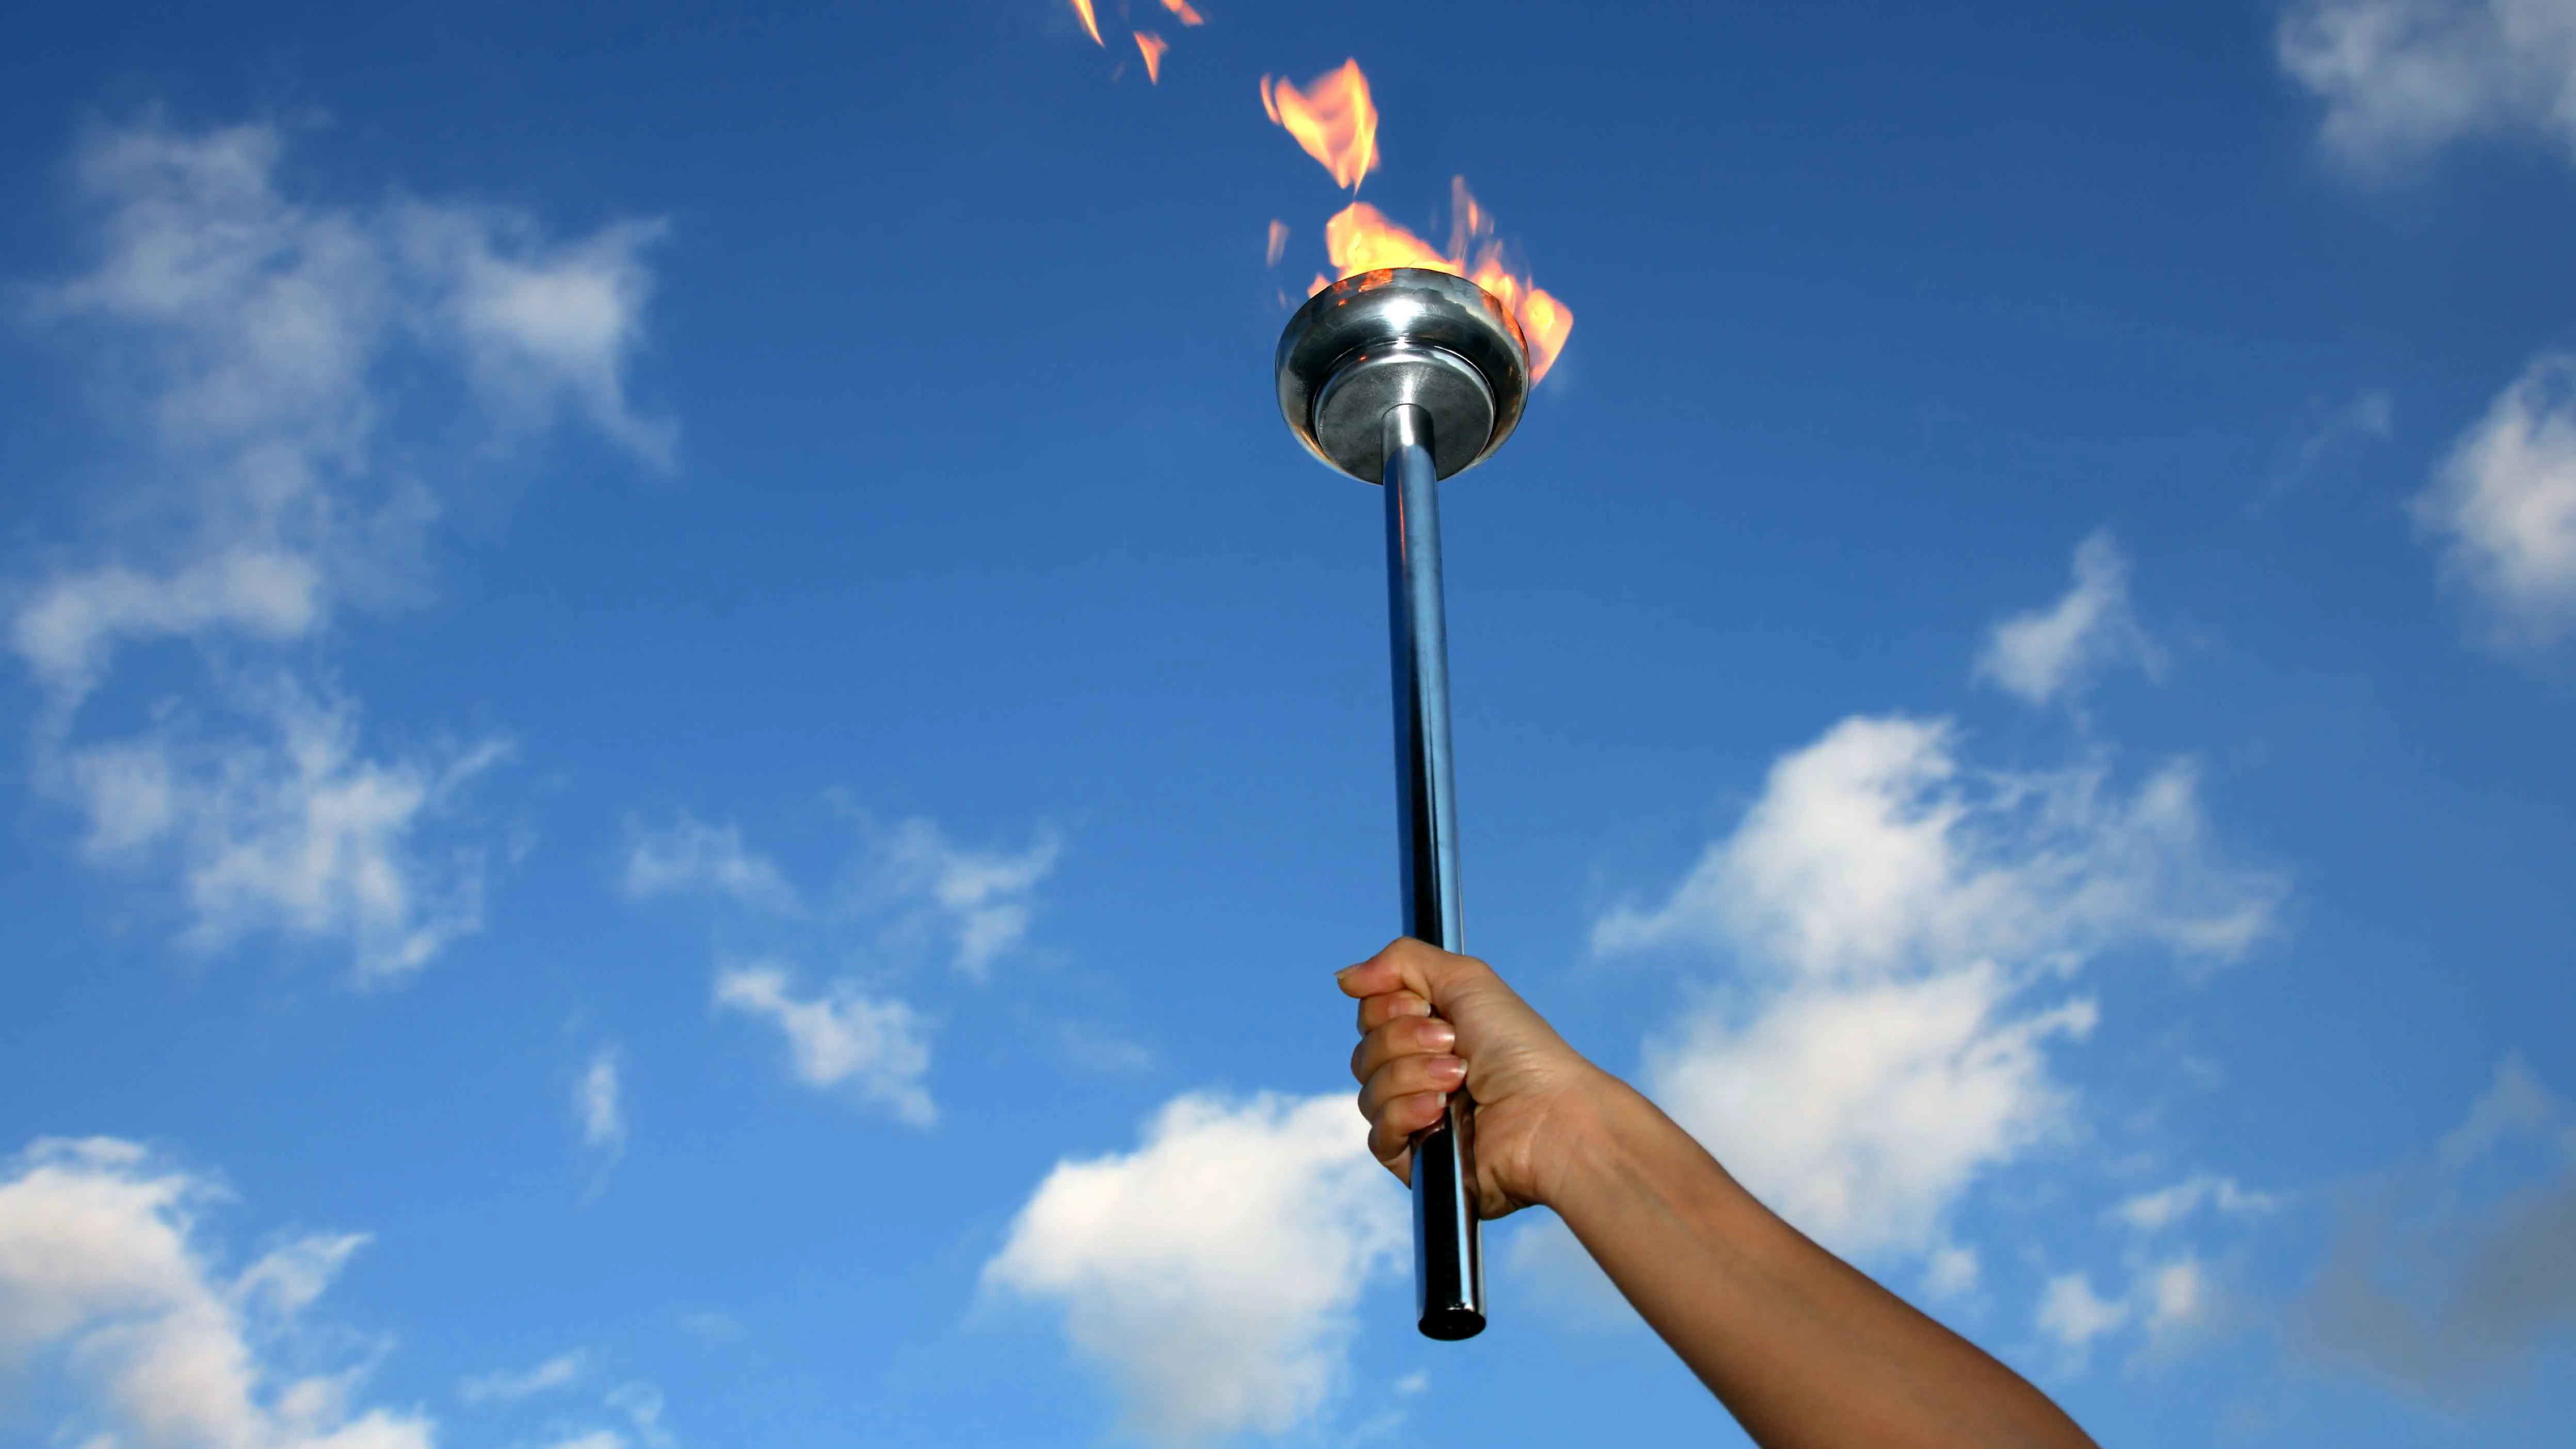 أولمبياد باريس.. كيف شكلت "النار" رمزًا لهذا المحفل على مر العصور؟